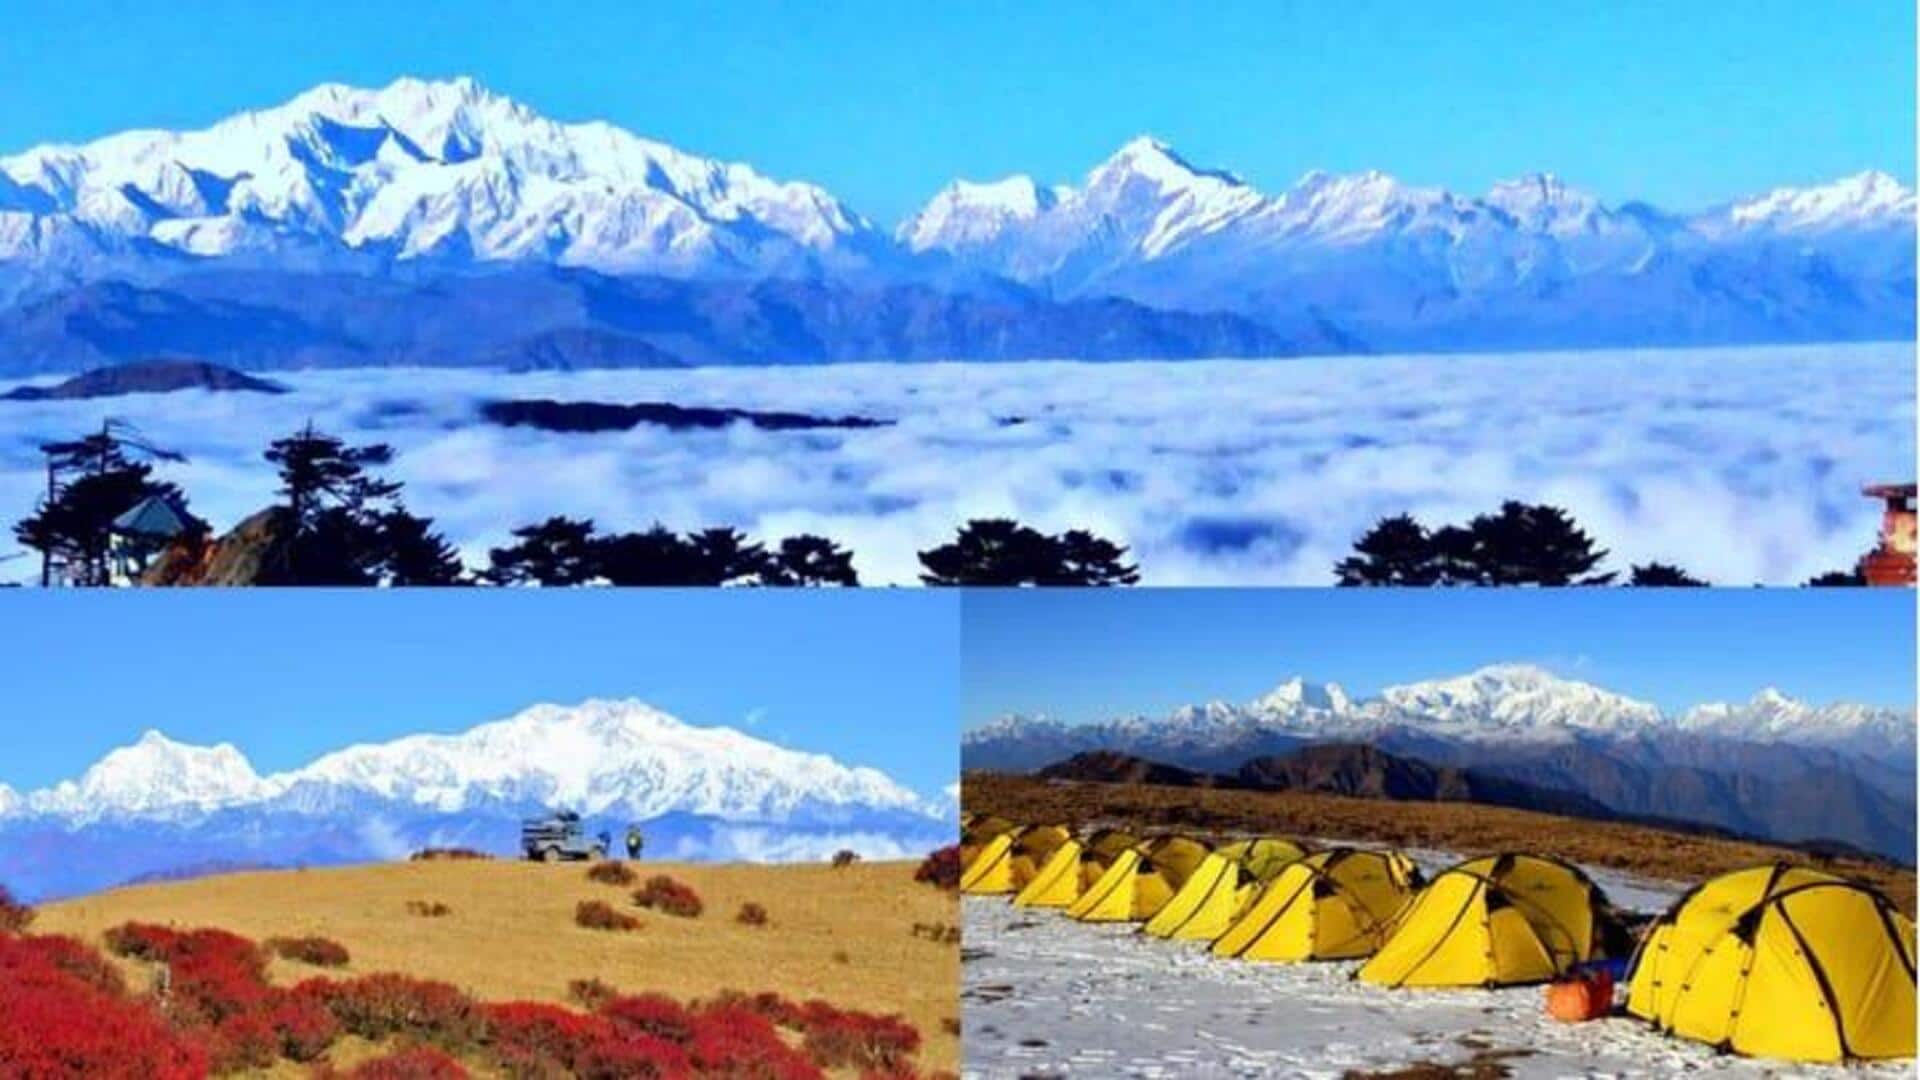 पश्चिम बंगाल की सबसे ऊंची चोटी संदक्फू की इन 5 खूबसूरत जगहों का करें रुख 